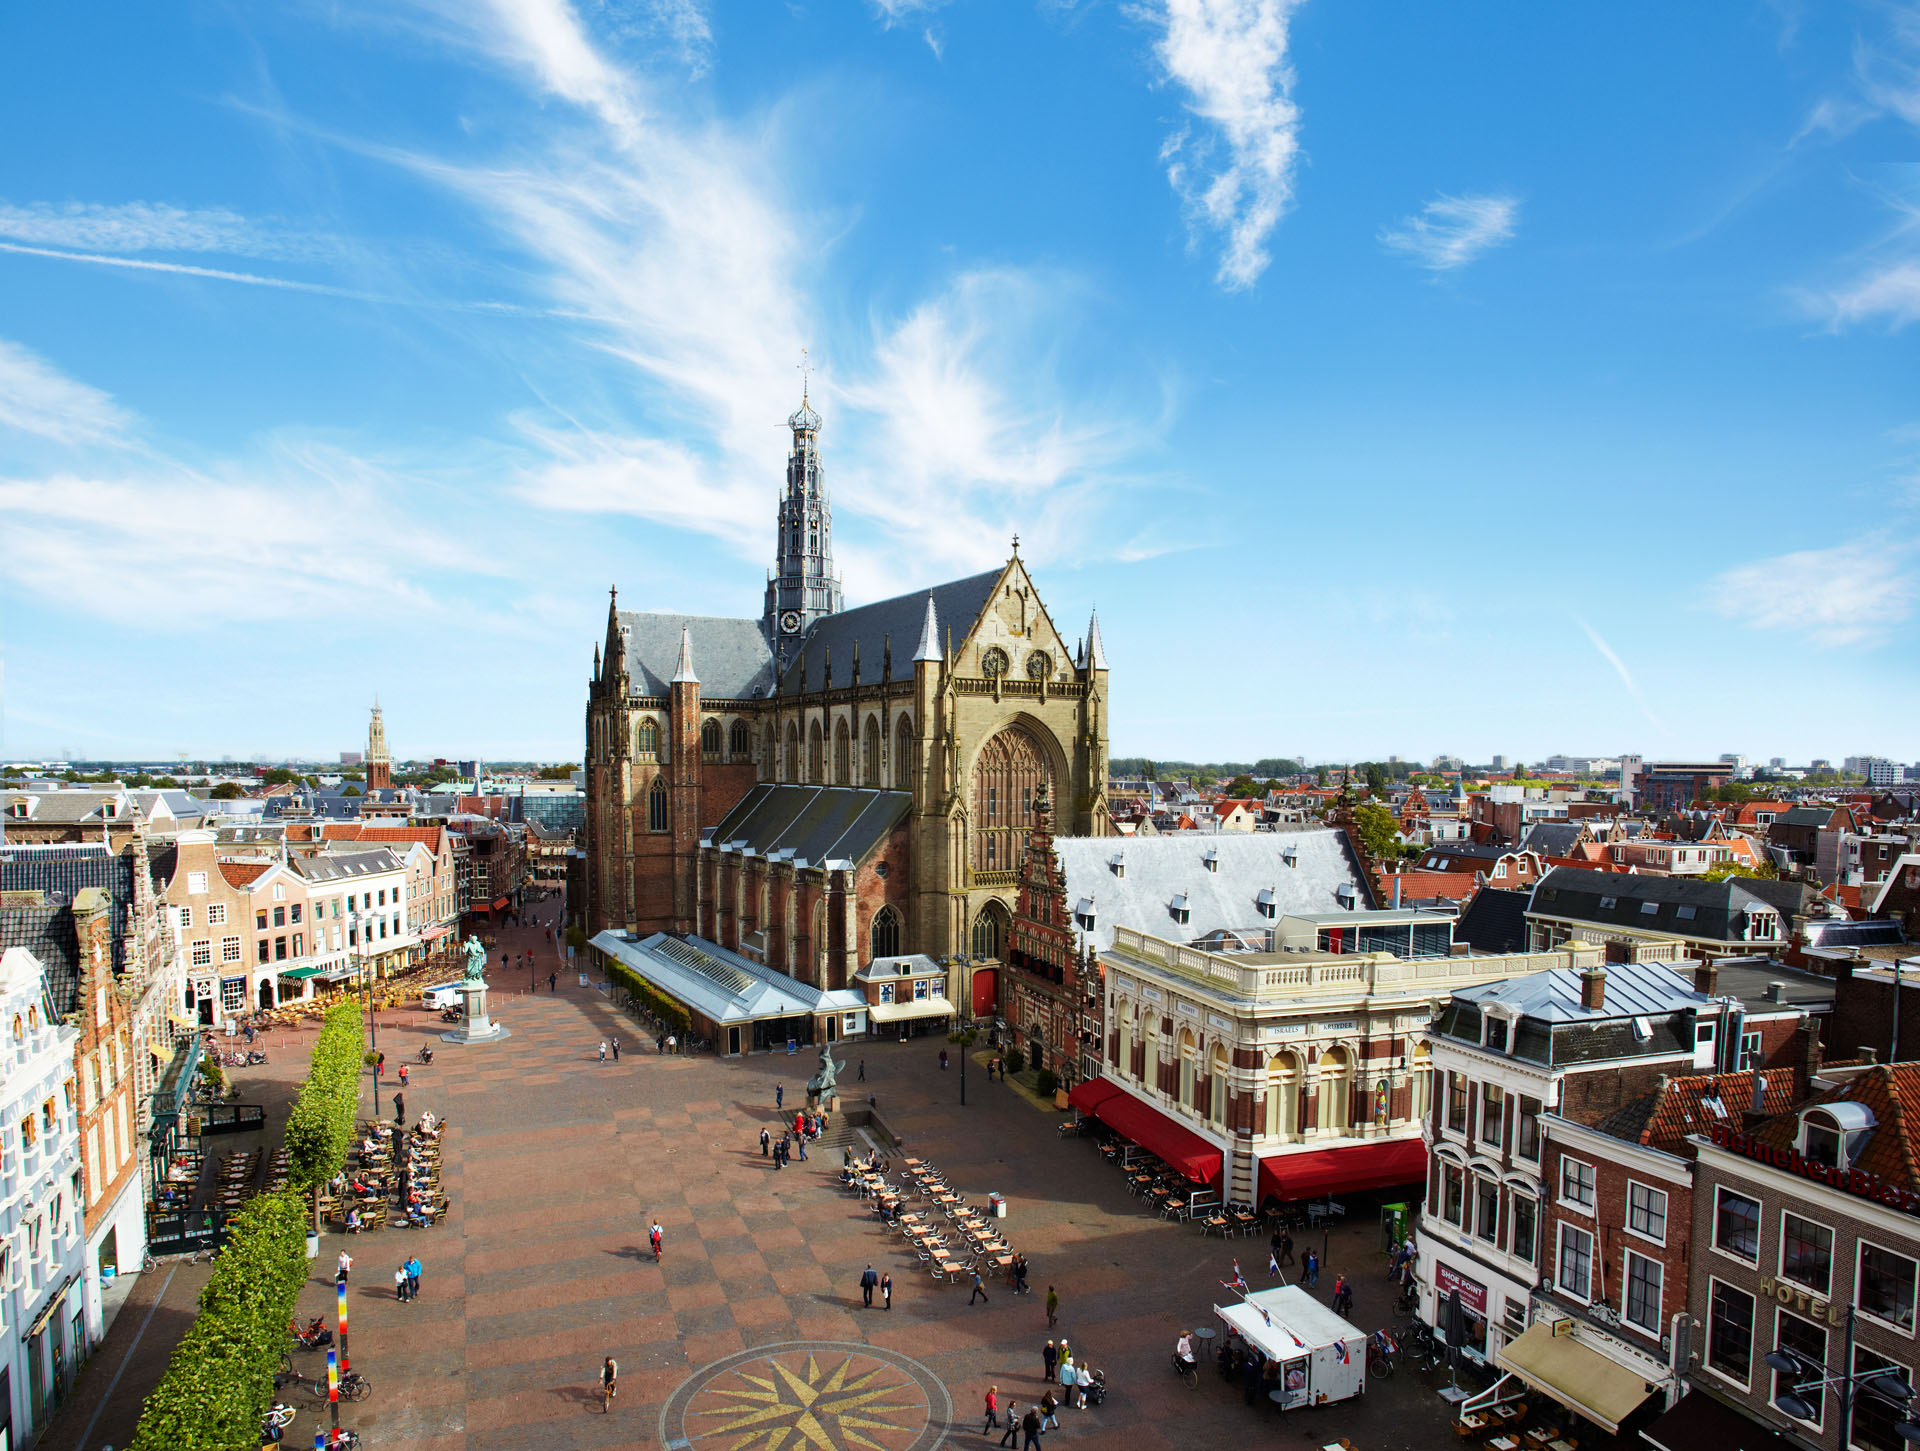 City of Haarlem